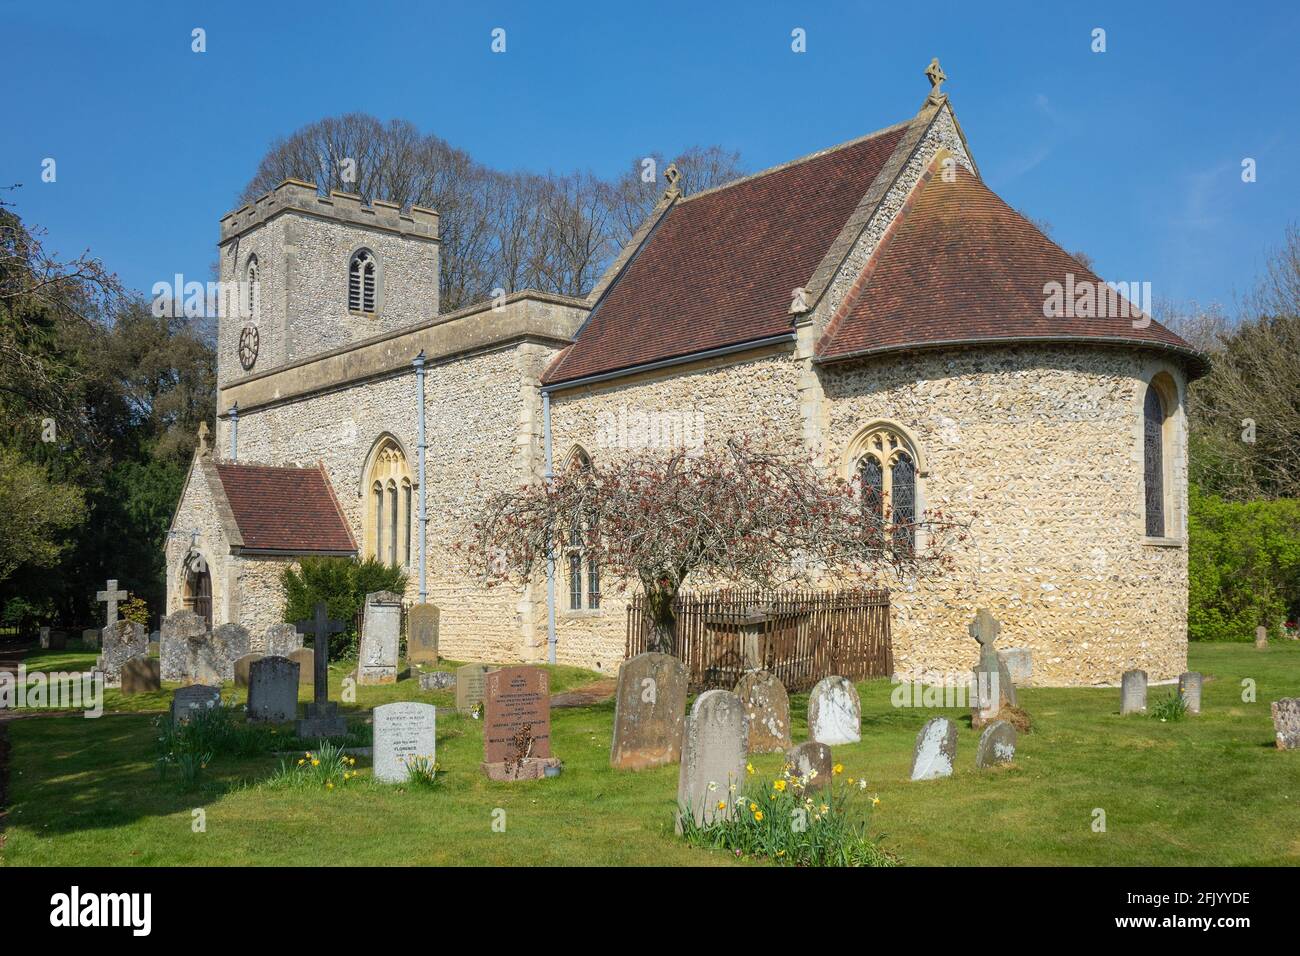 England, Oxfordshire, Checkendon church Stock Photo